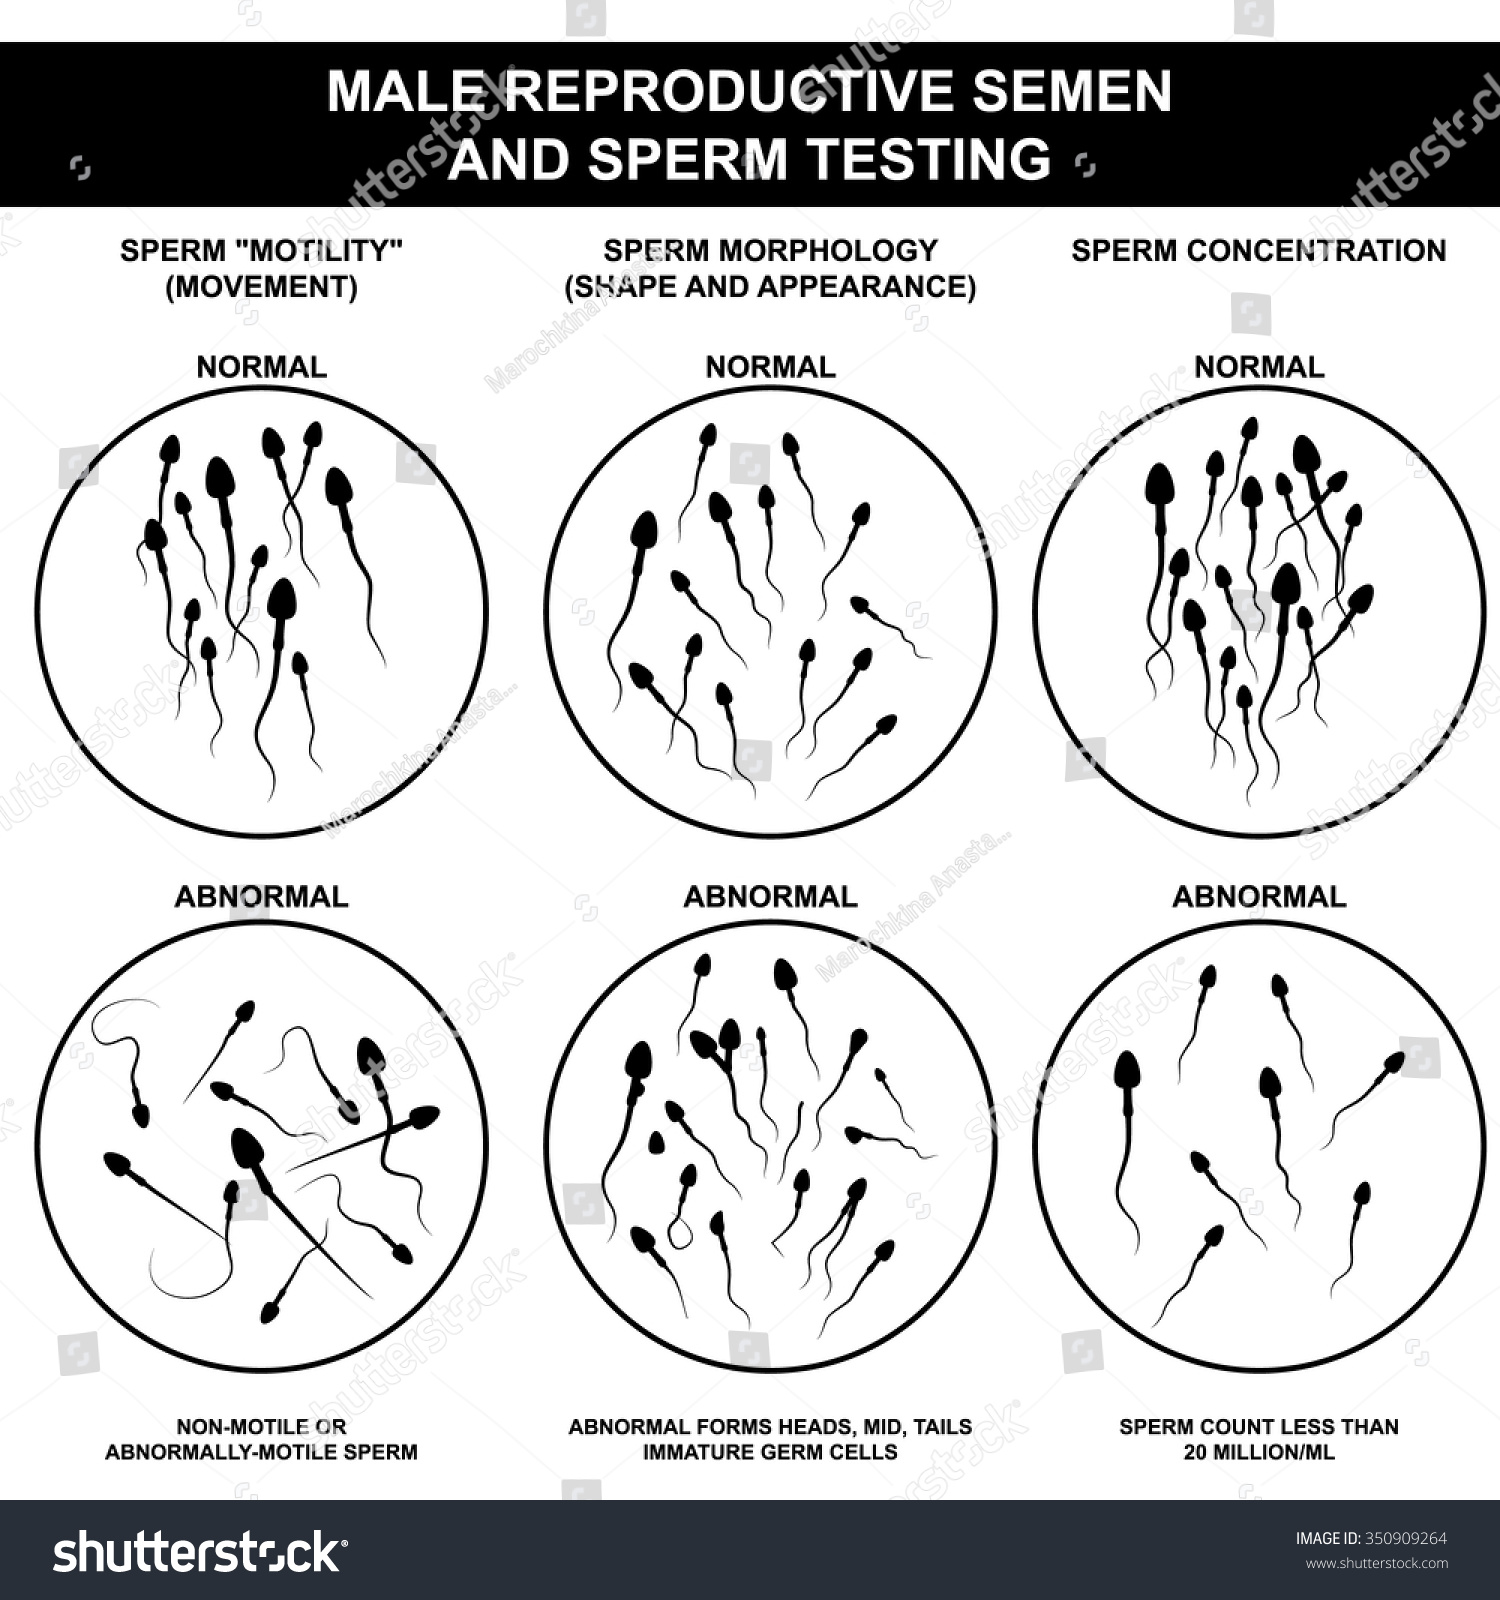 как увеличить объем спермы при фото 12